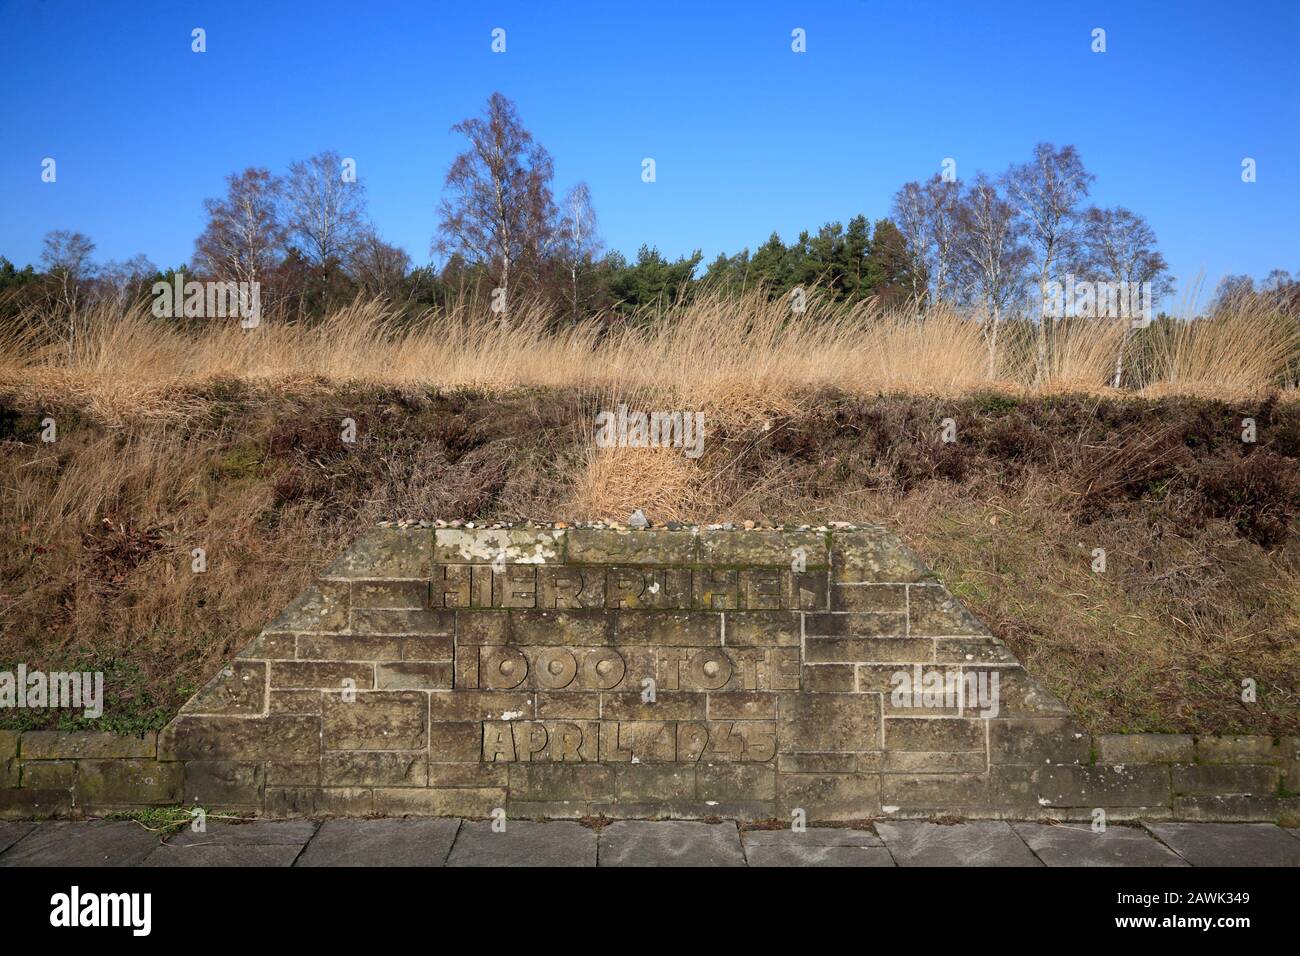 Mémorial de la tombe de masse, mémorial du camp de concentration de Bergen-Belsen, Basse-Saxe, Allemagne, Europe Banque D'Images